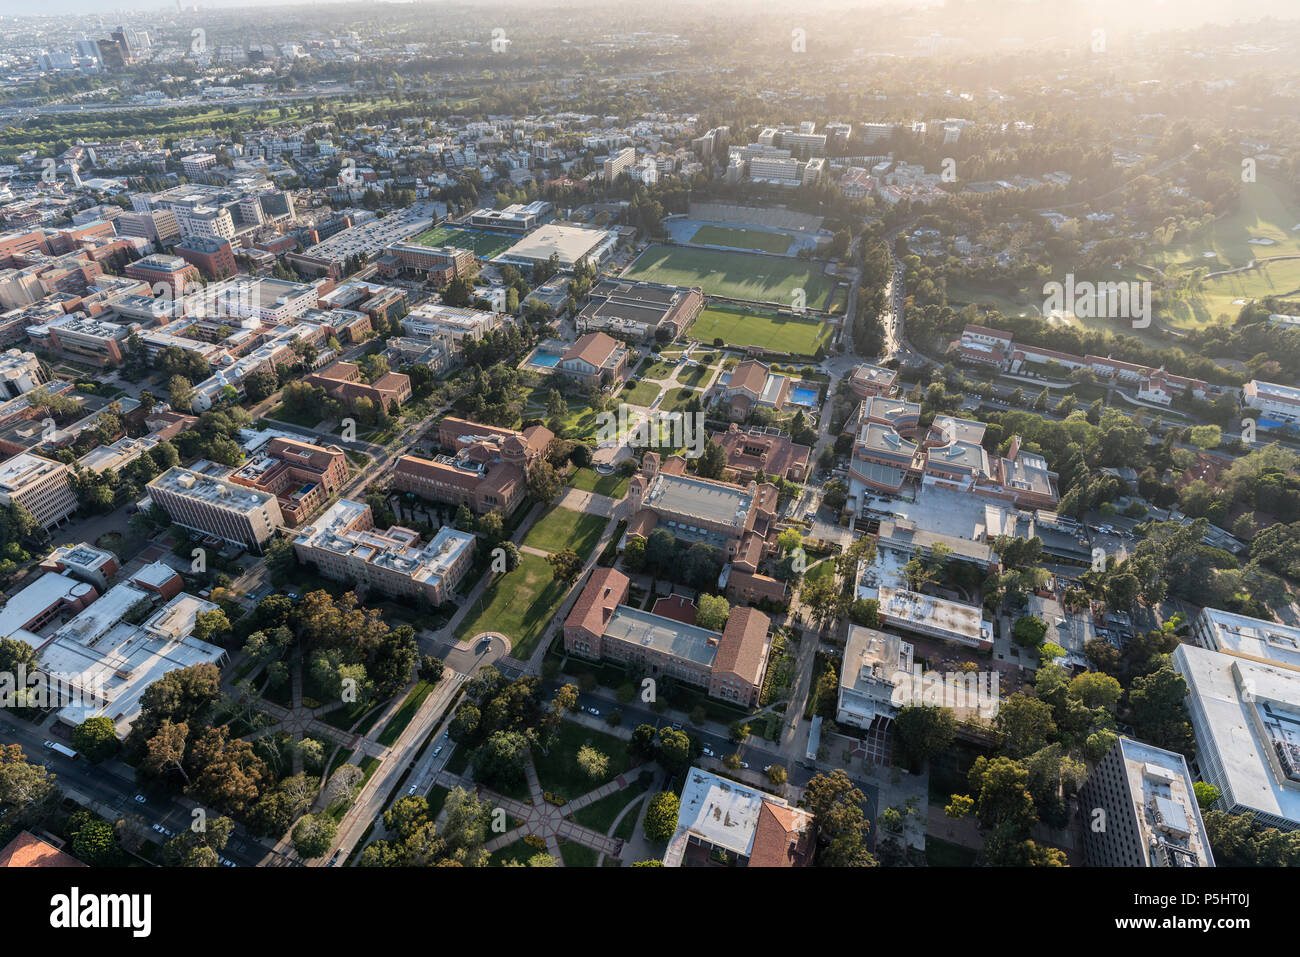 Los Angeles, Californie, USA - 18 Avril 2018 : Vue aérienne de qbuildings et quad sur le campus de l'UCLA près de Westwood. Banque D'Images